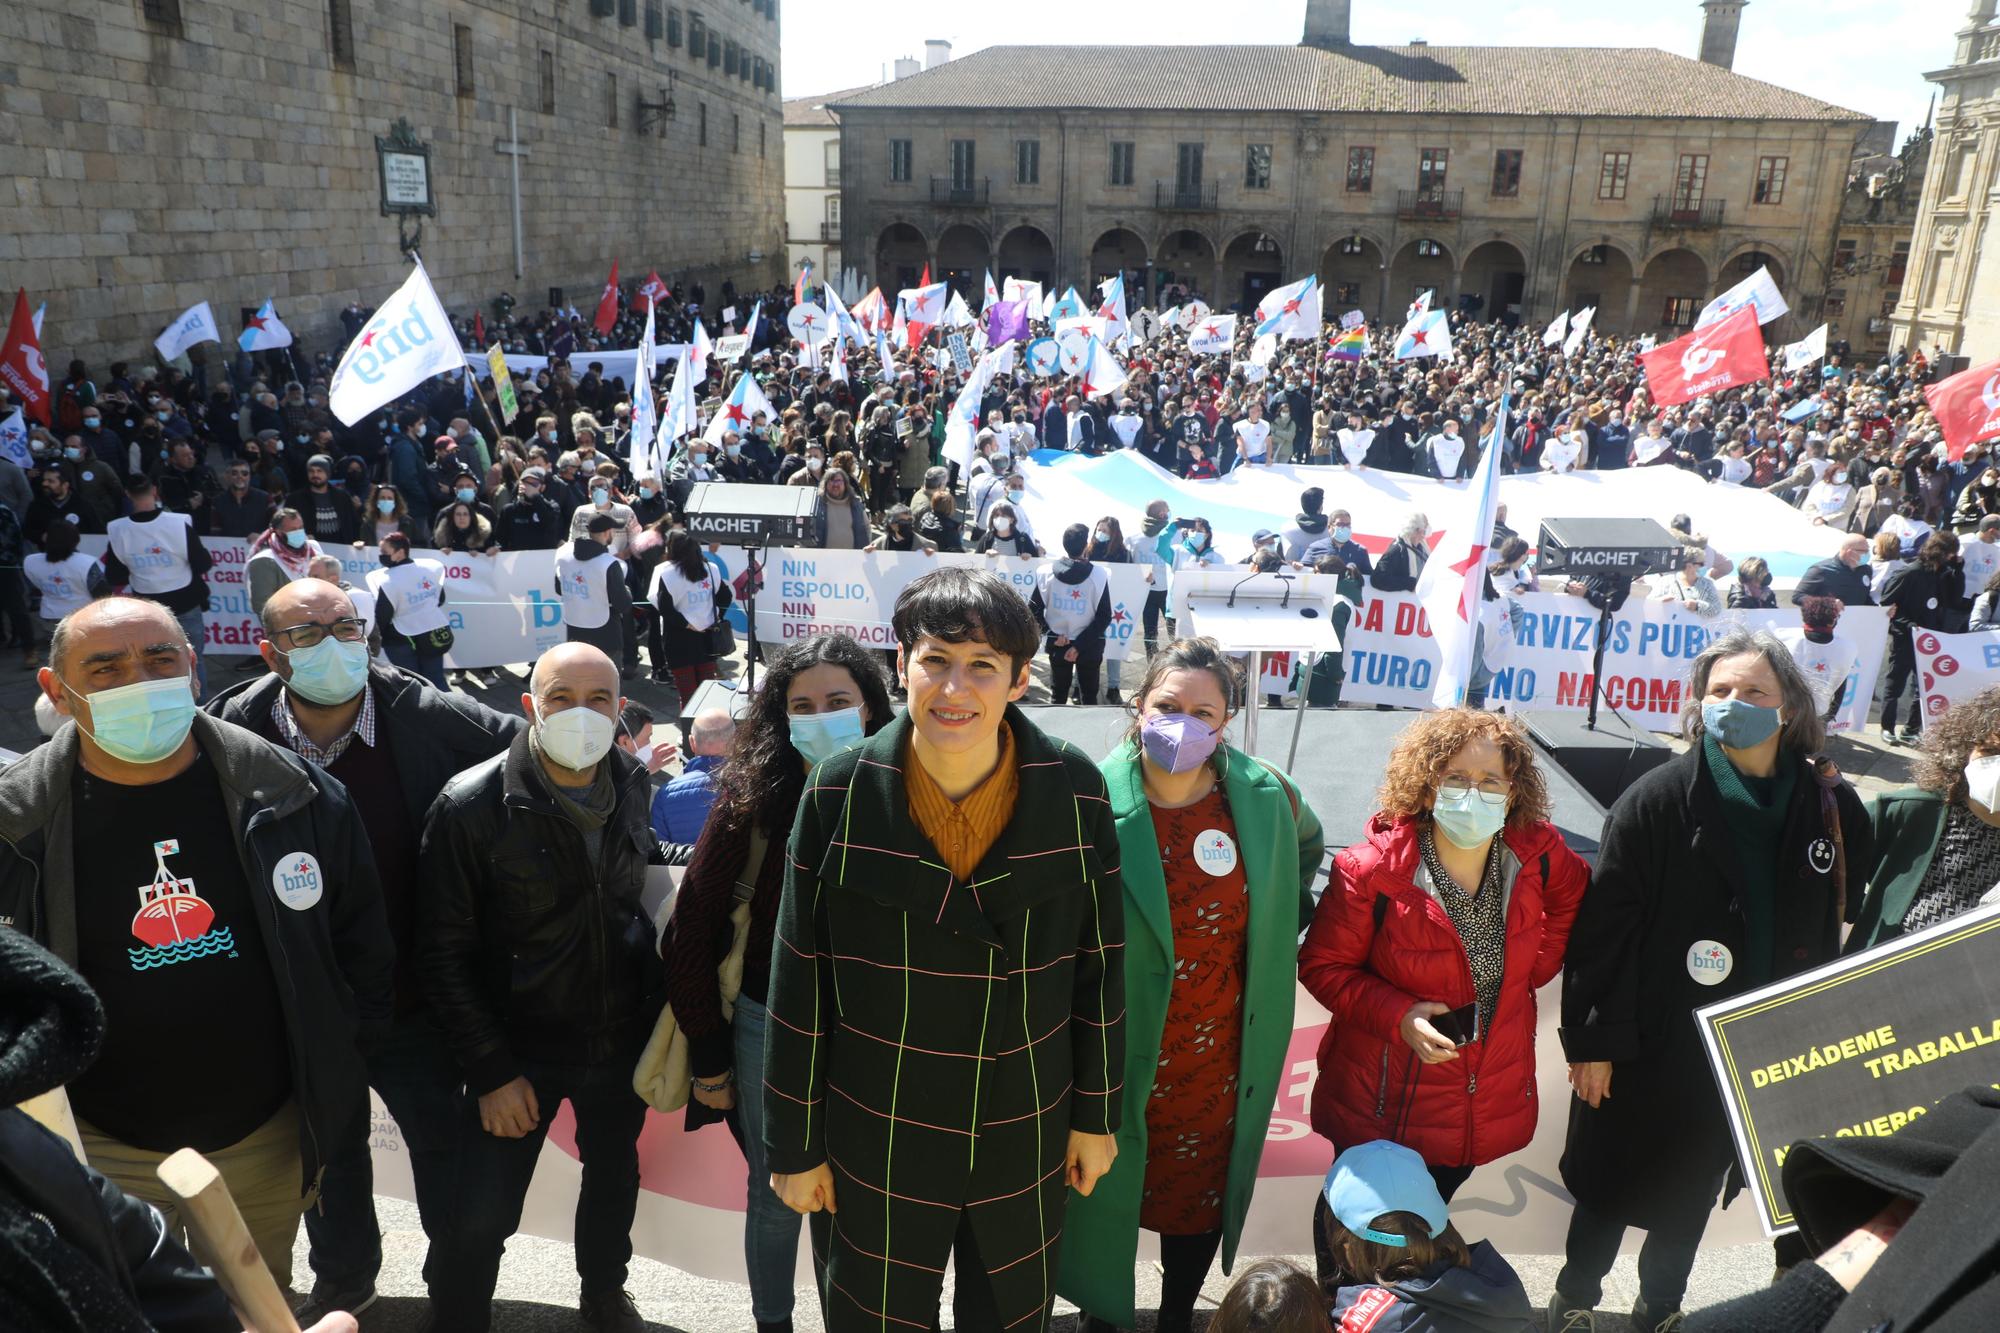 Multitudinaria manifestación contra el alza de los precios convocada por el BNG: "Galiza non atura a suba da factura"